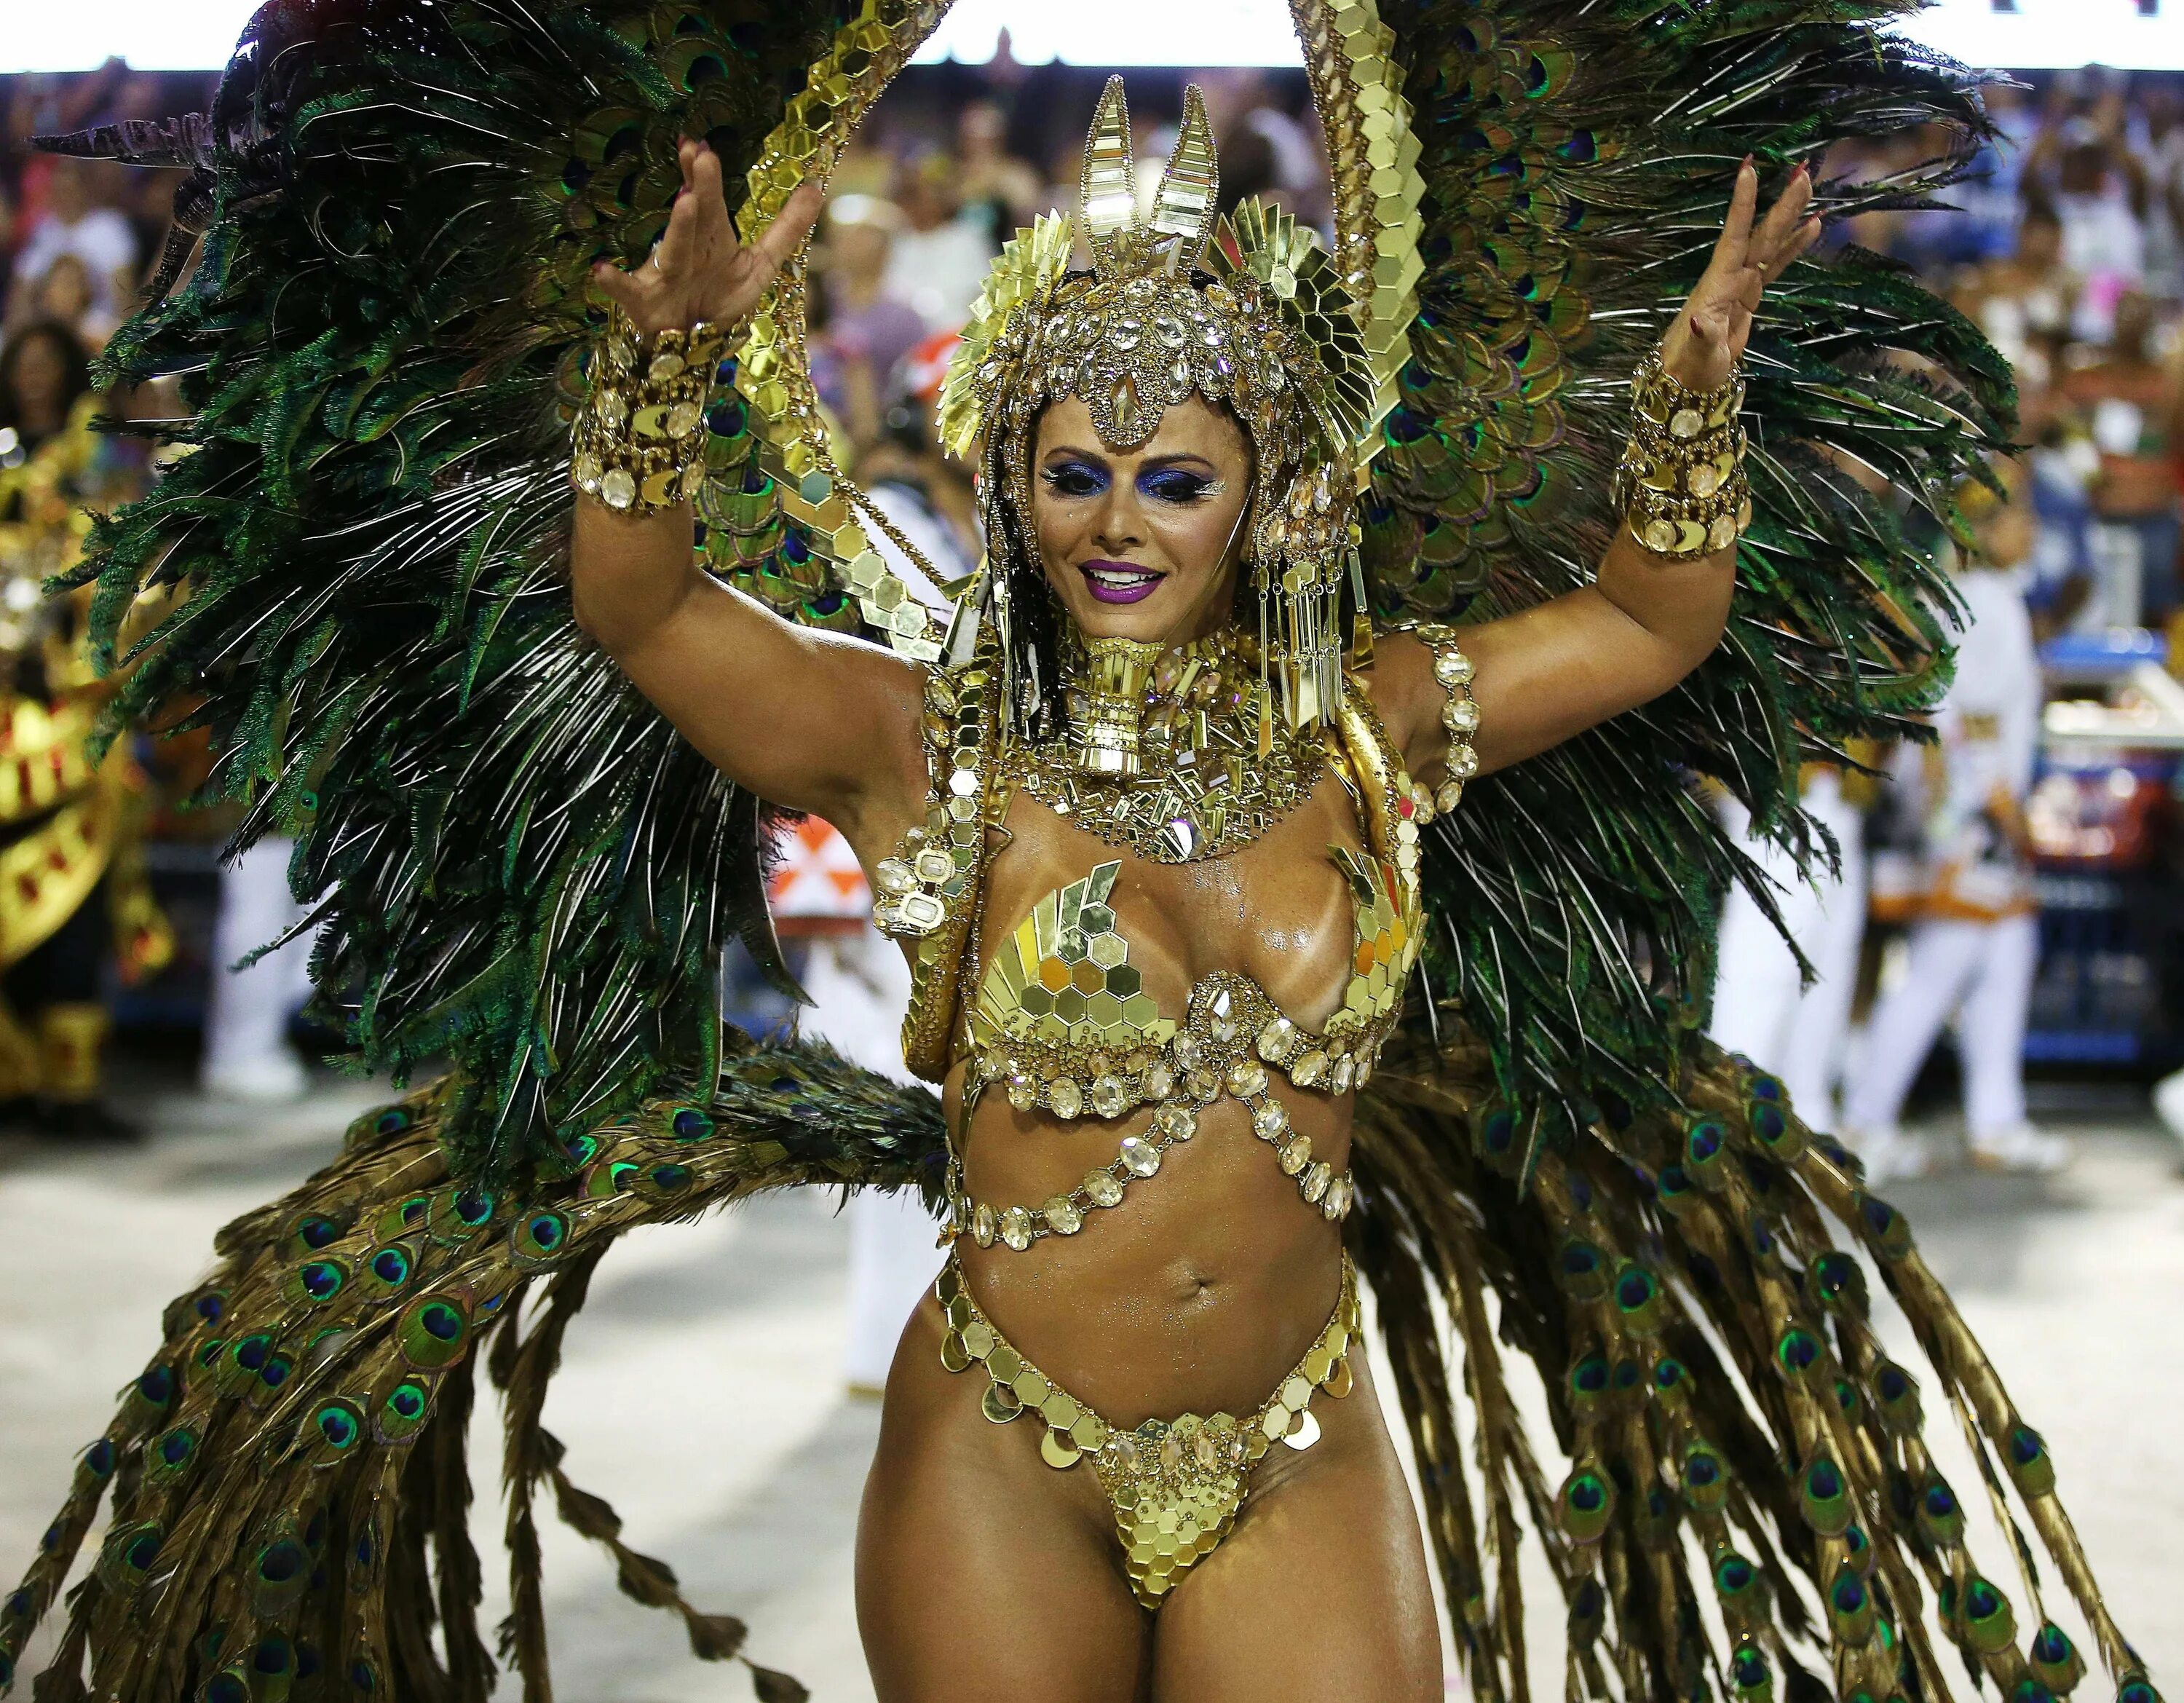 Rio 18. Карнавал в Рио-де-Жанейро. Карнавал в Бразилии. Бразилия карнавал женщины. Карнавал Рио в Бразилии 18.